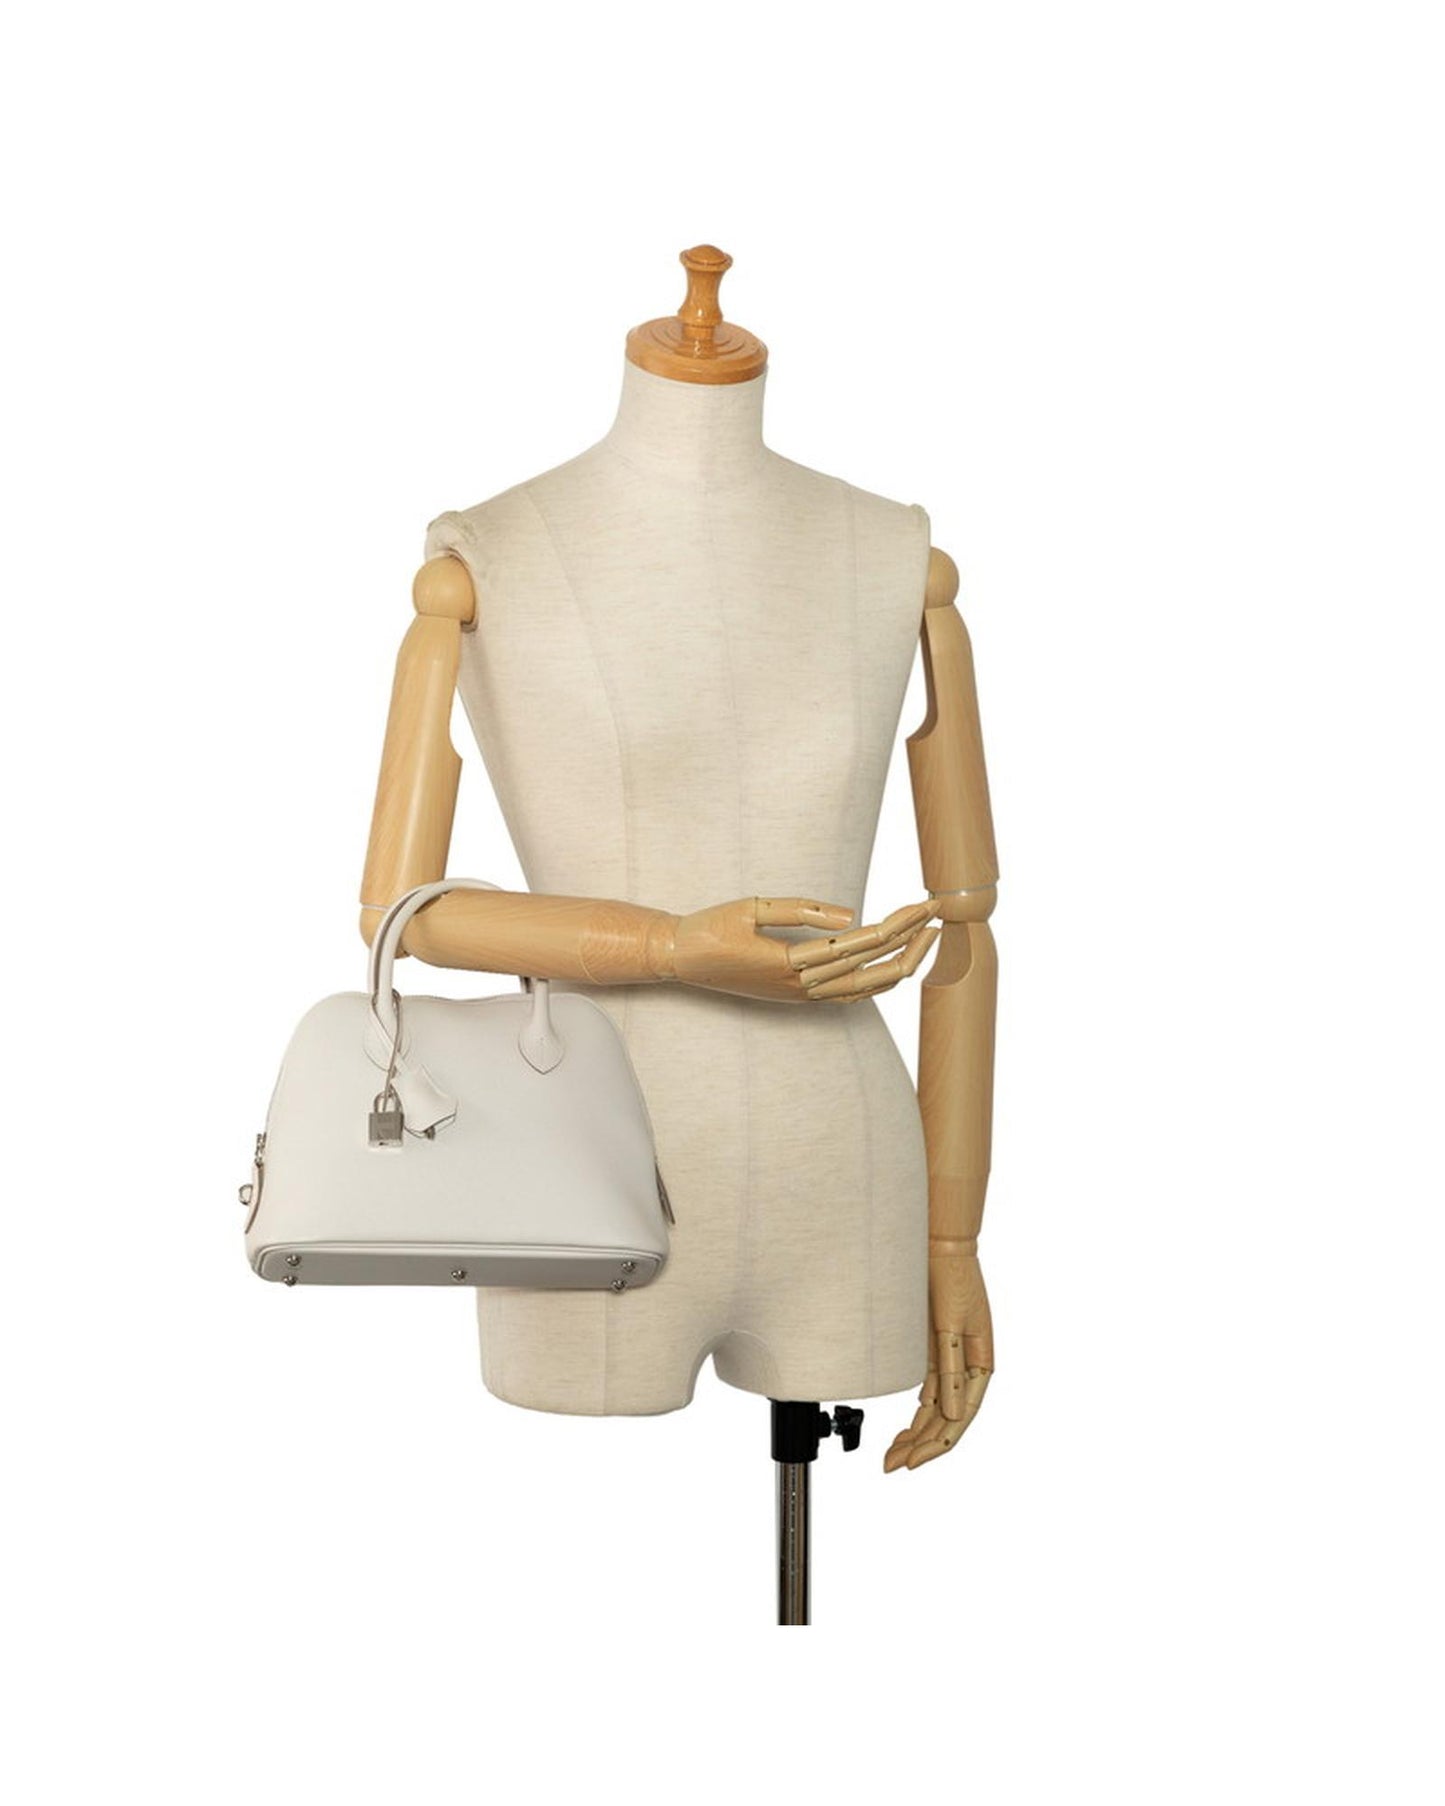 Hermes Women's Vintage White Leather Bolide Handbag by Hermes in White